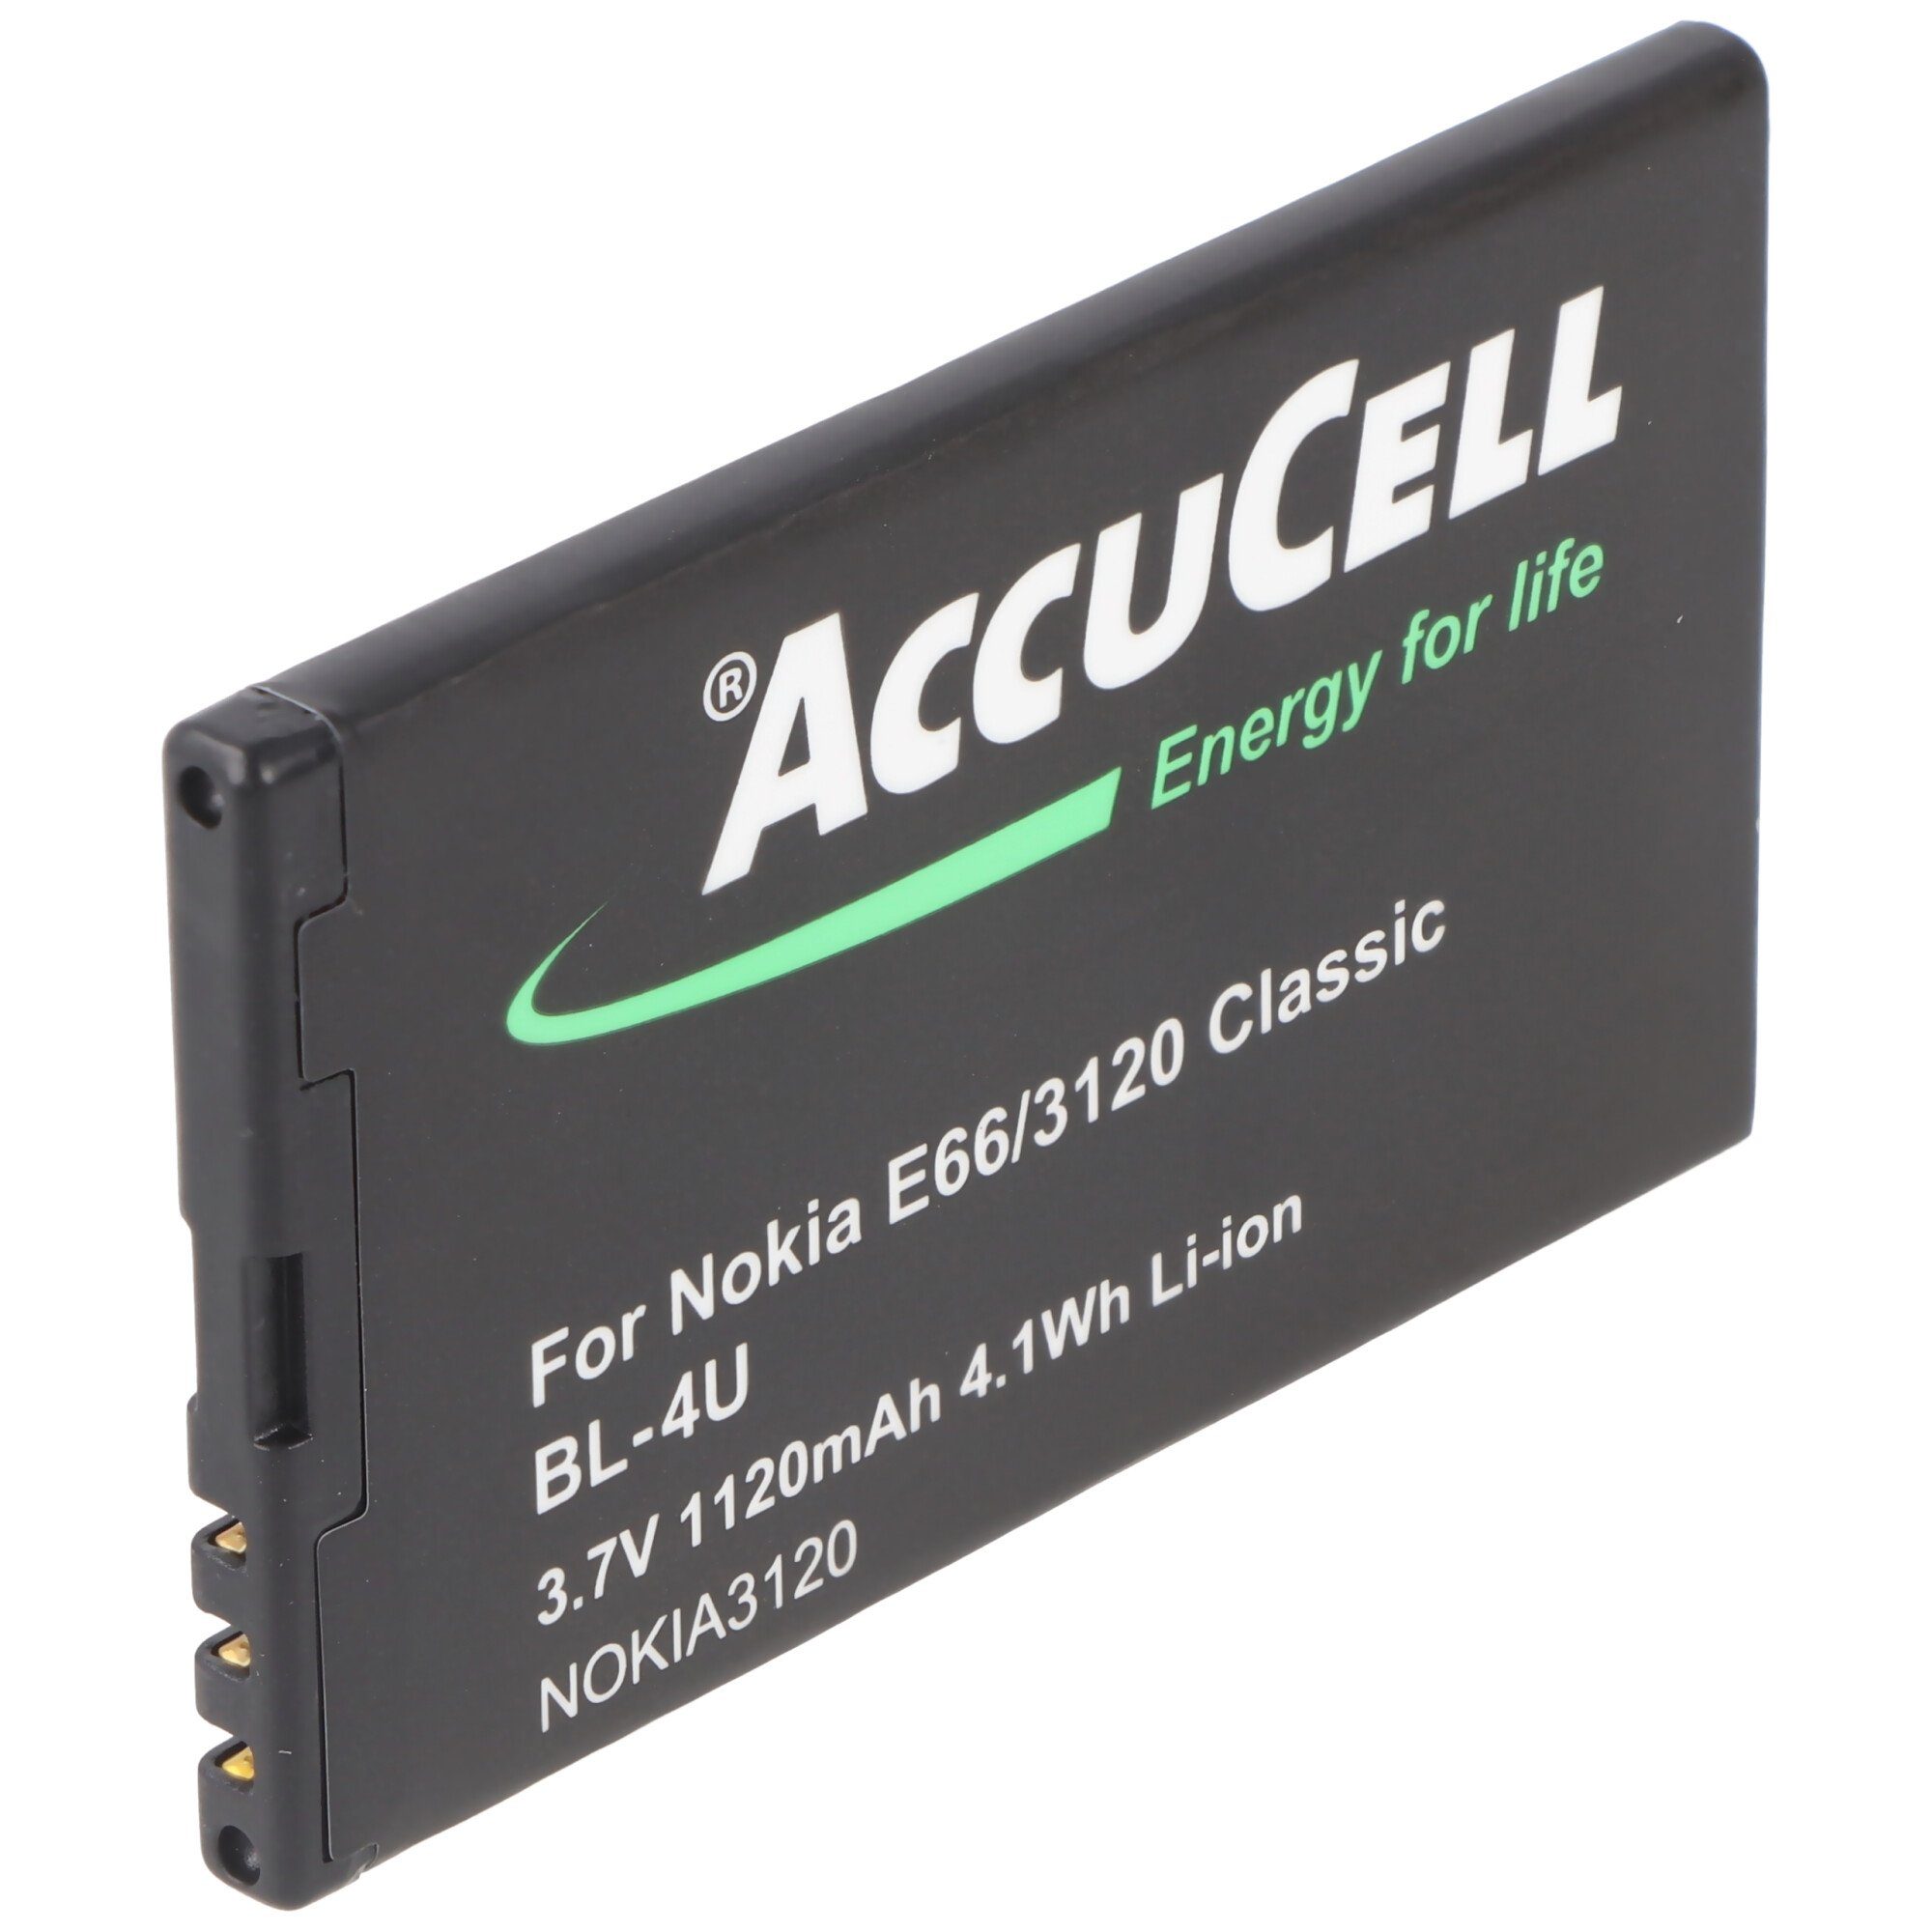 AccuCell Li-Ion-Akku 900mAh 3.7V MP-S-V, Nokia N4U85T, BL-4UV, Akku BL-4U, TB-B für